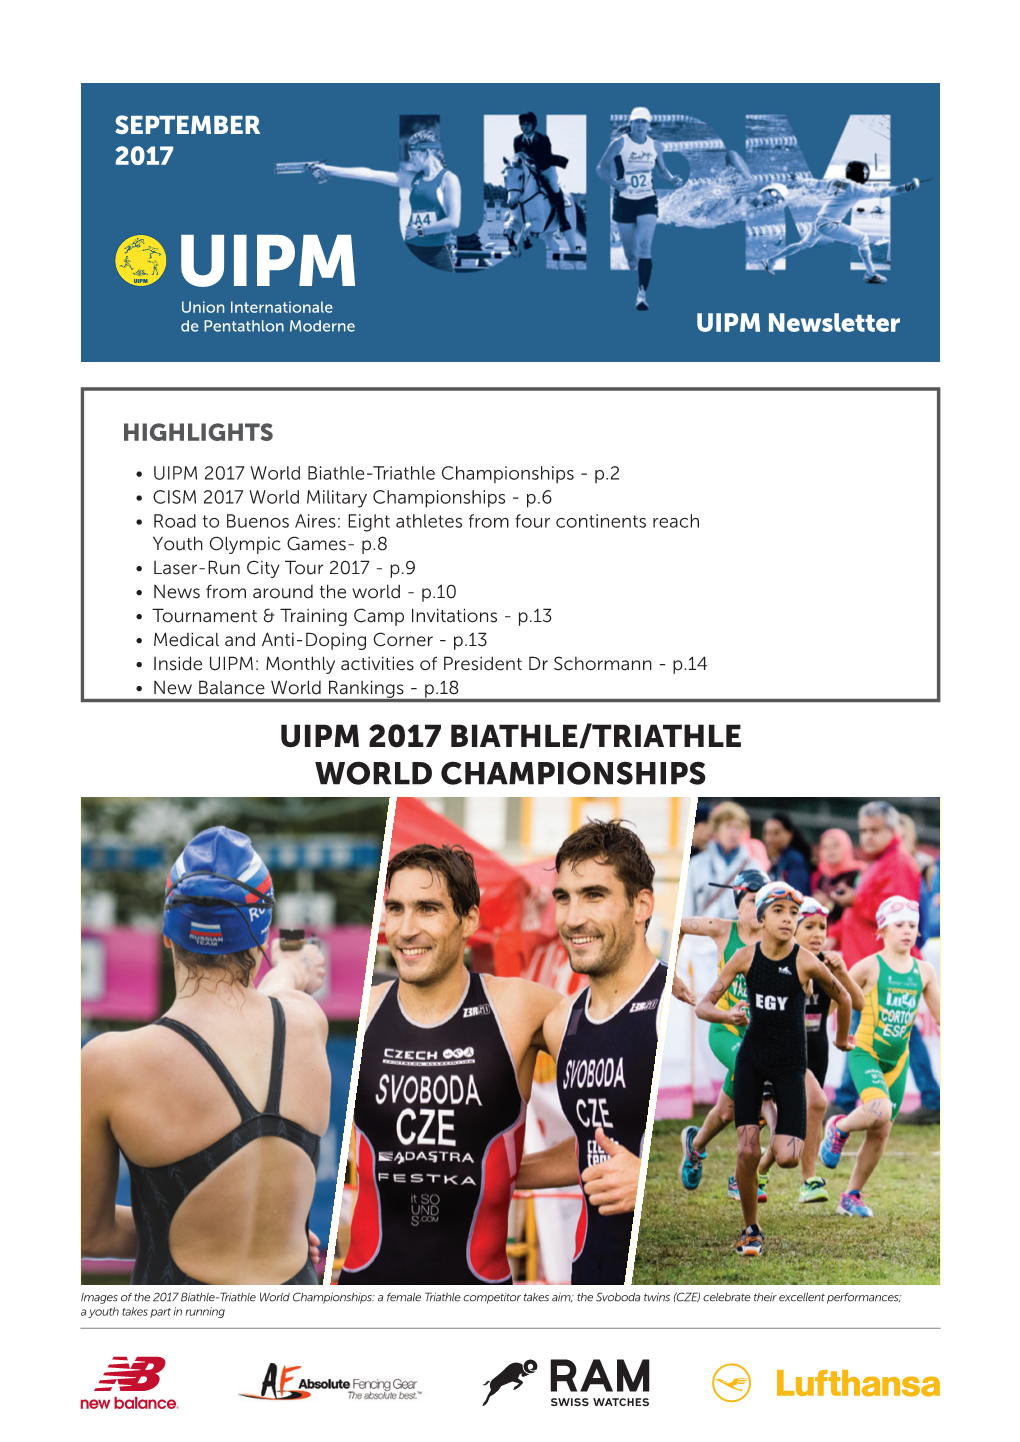 Uipm 2017 Biathle/Triathle World Championships